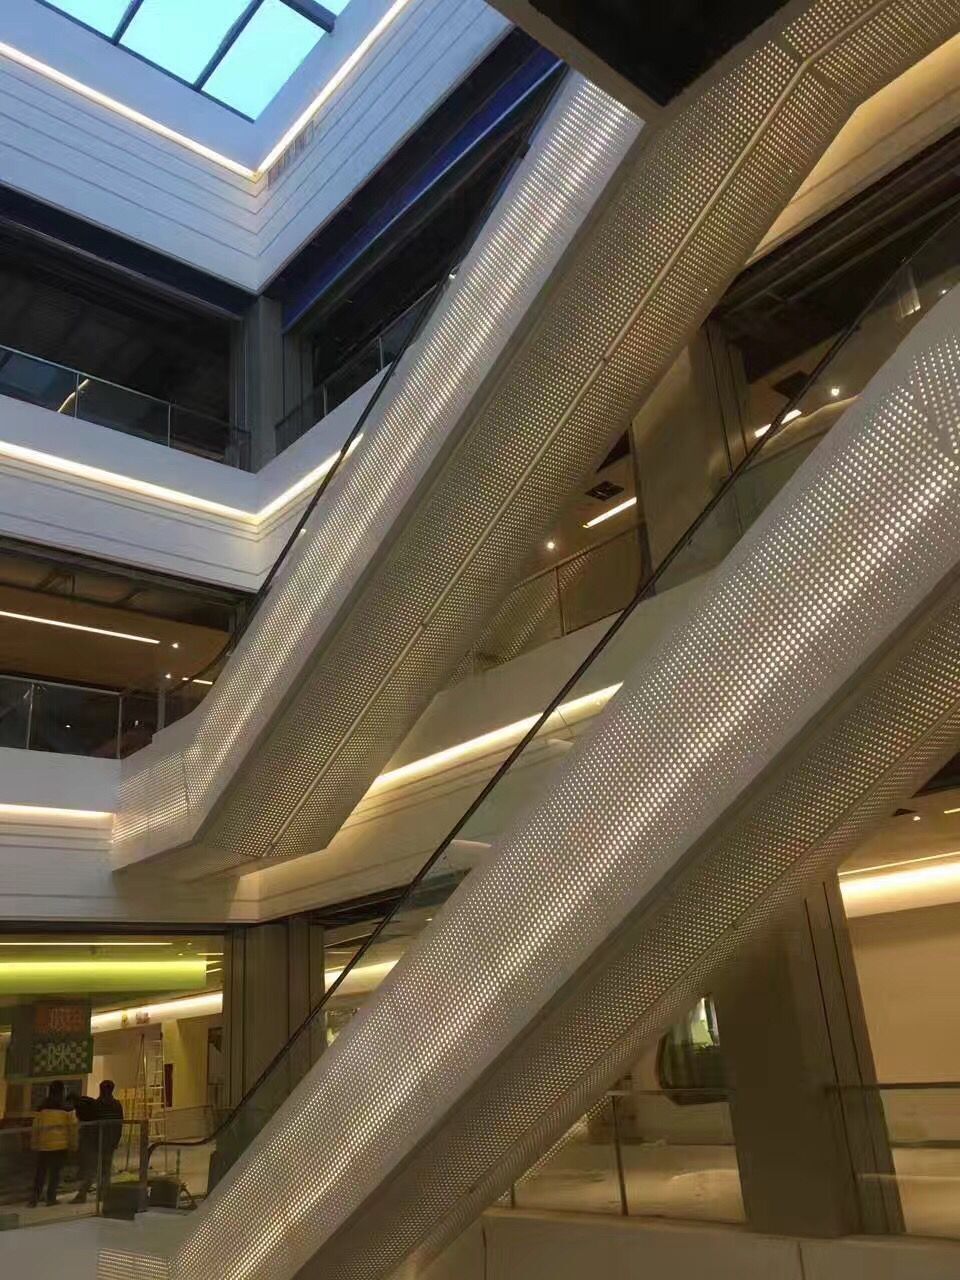 冲孔铝单板包商场自动扶梯两侧